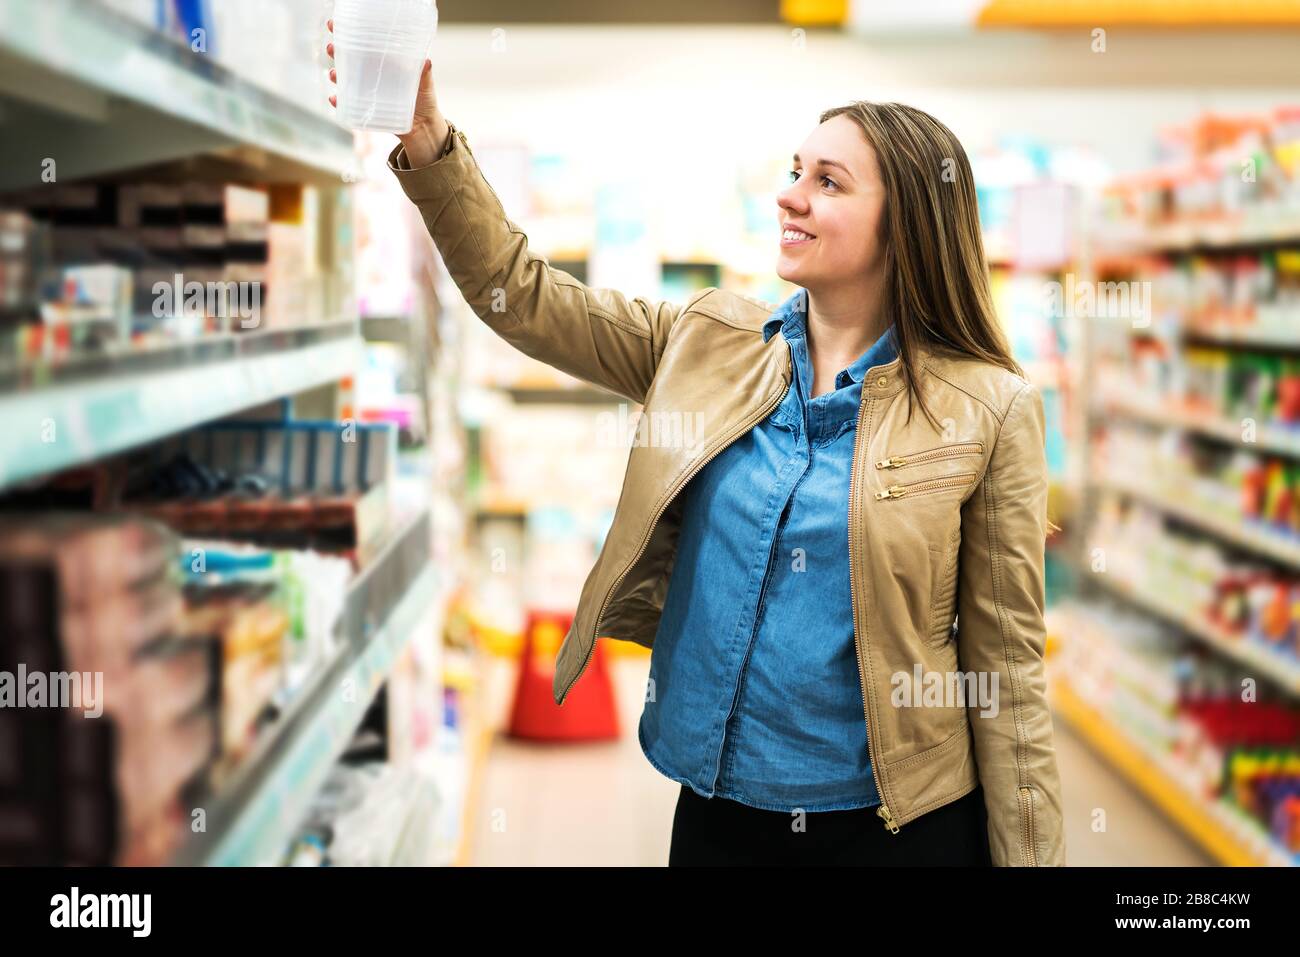 Cliente femenino con paquete o artículo en el supermercado. Mujer tomando el producto de la estantería en la tienda de comestibles. Concepto de venta al por menor, venta y consumismo. Foto de stock